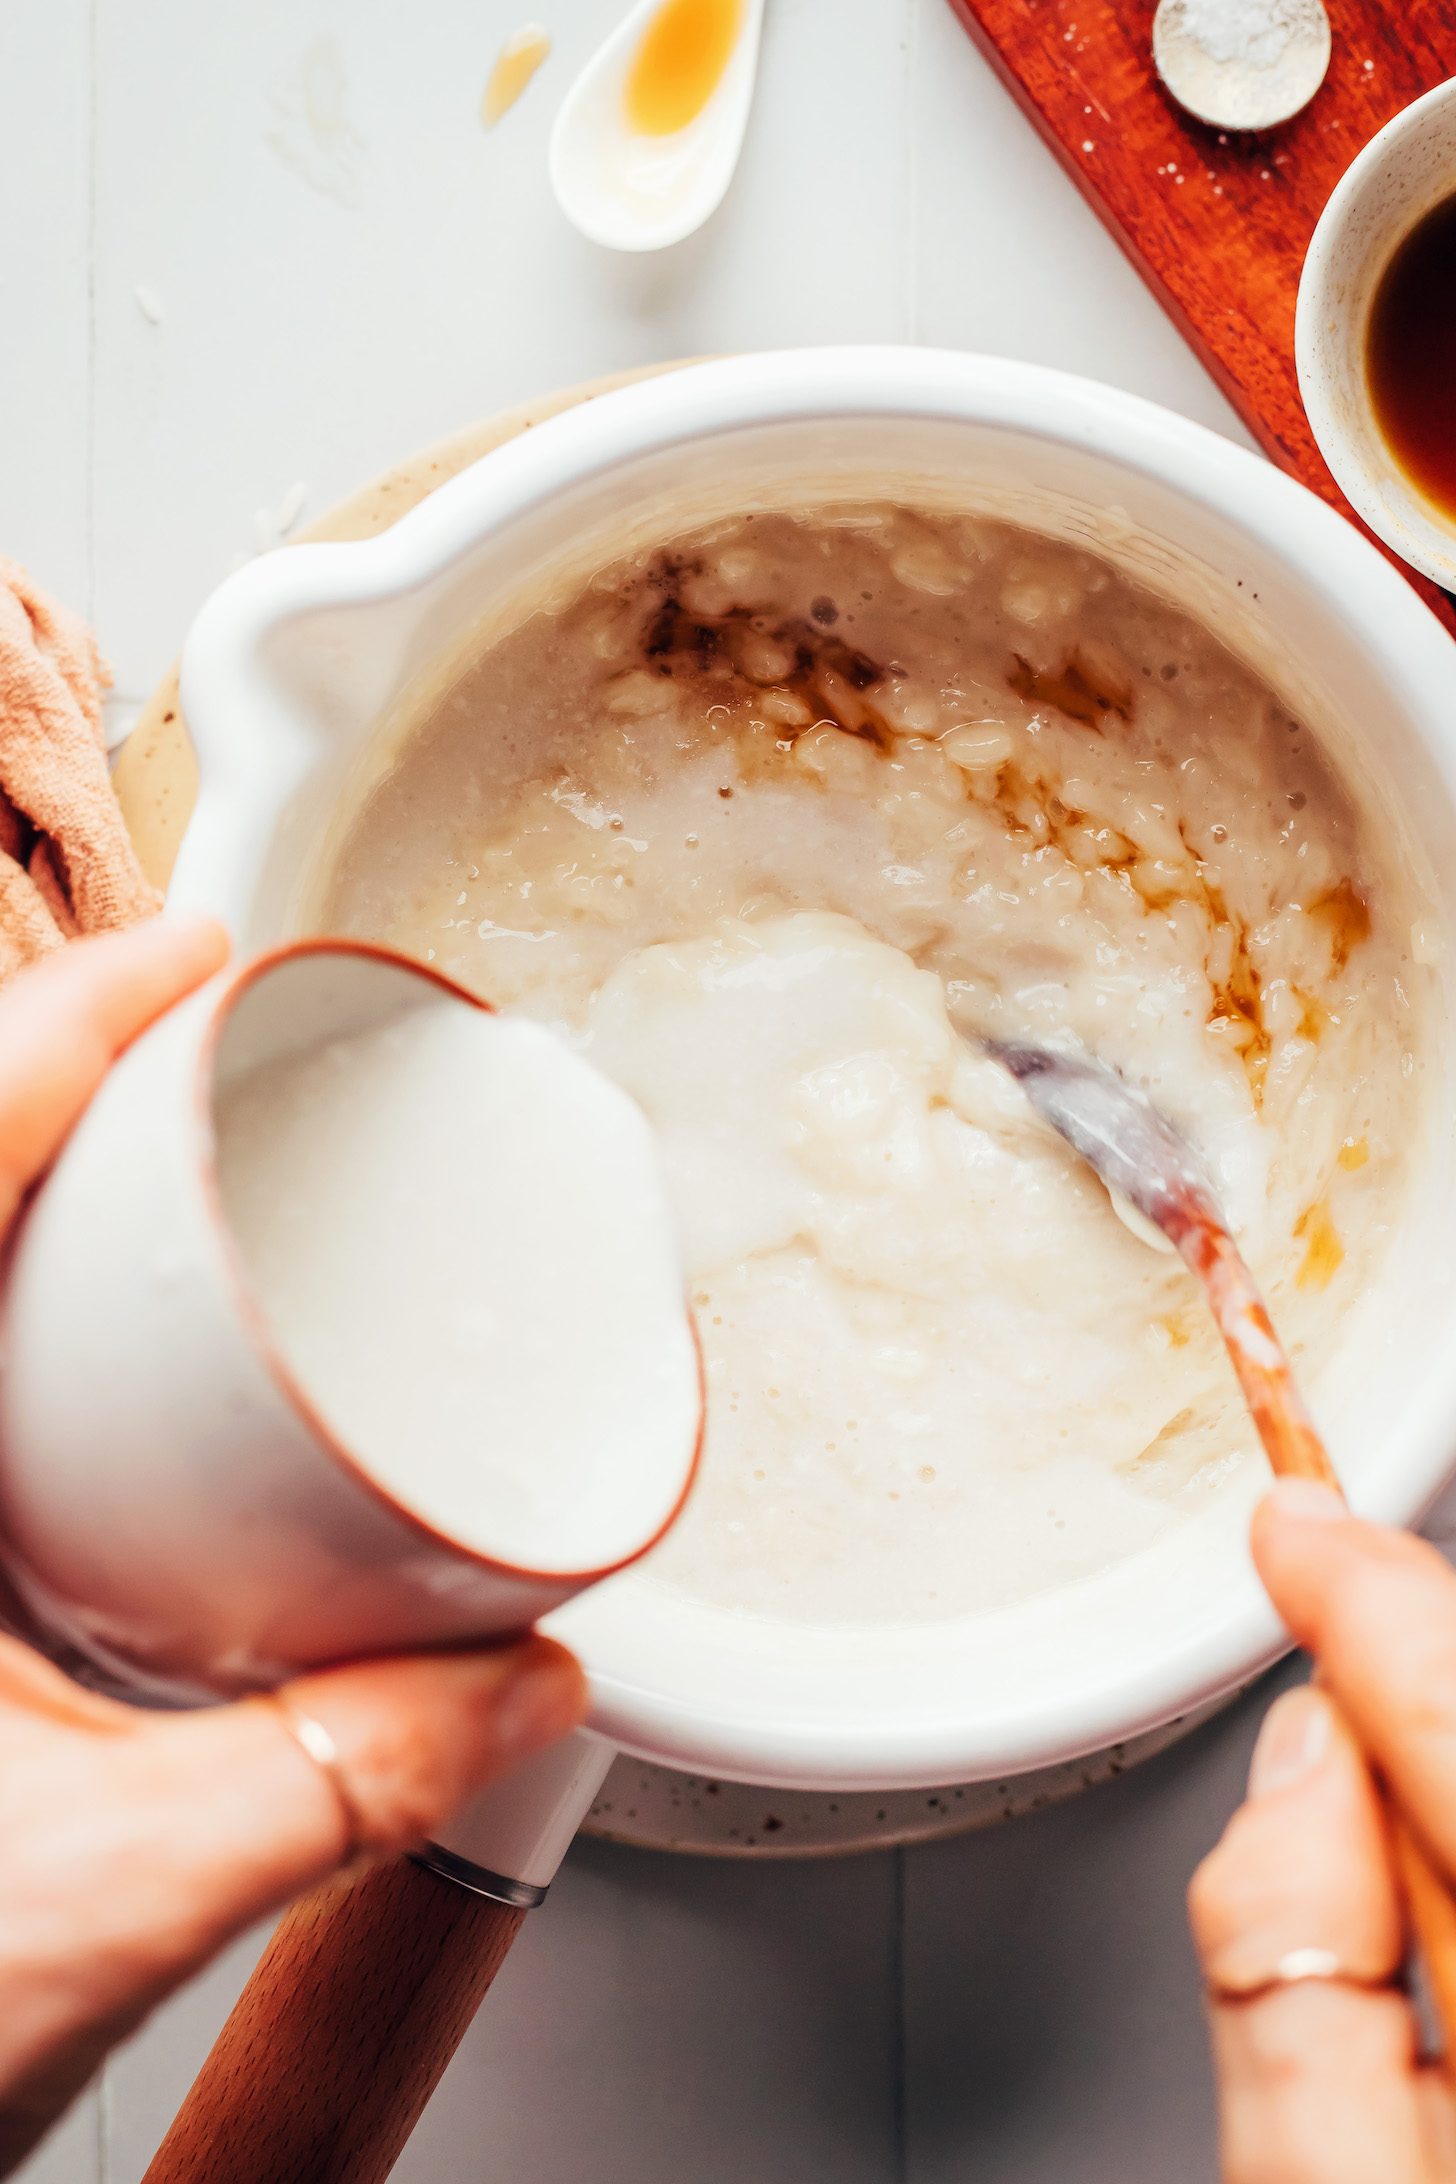 Verter leche de coco en una olla con jarabe de arce, vainilla, leche de almendras y arroz blanco cocido